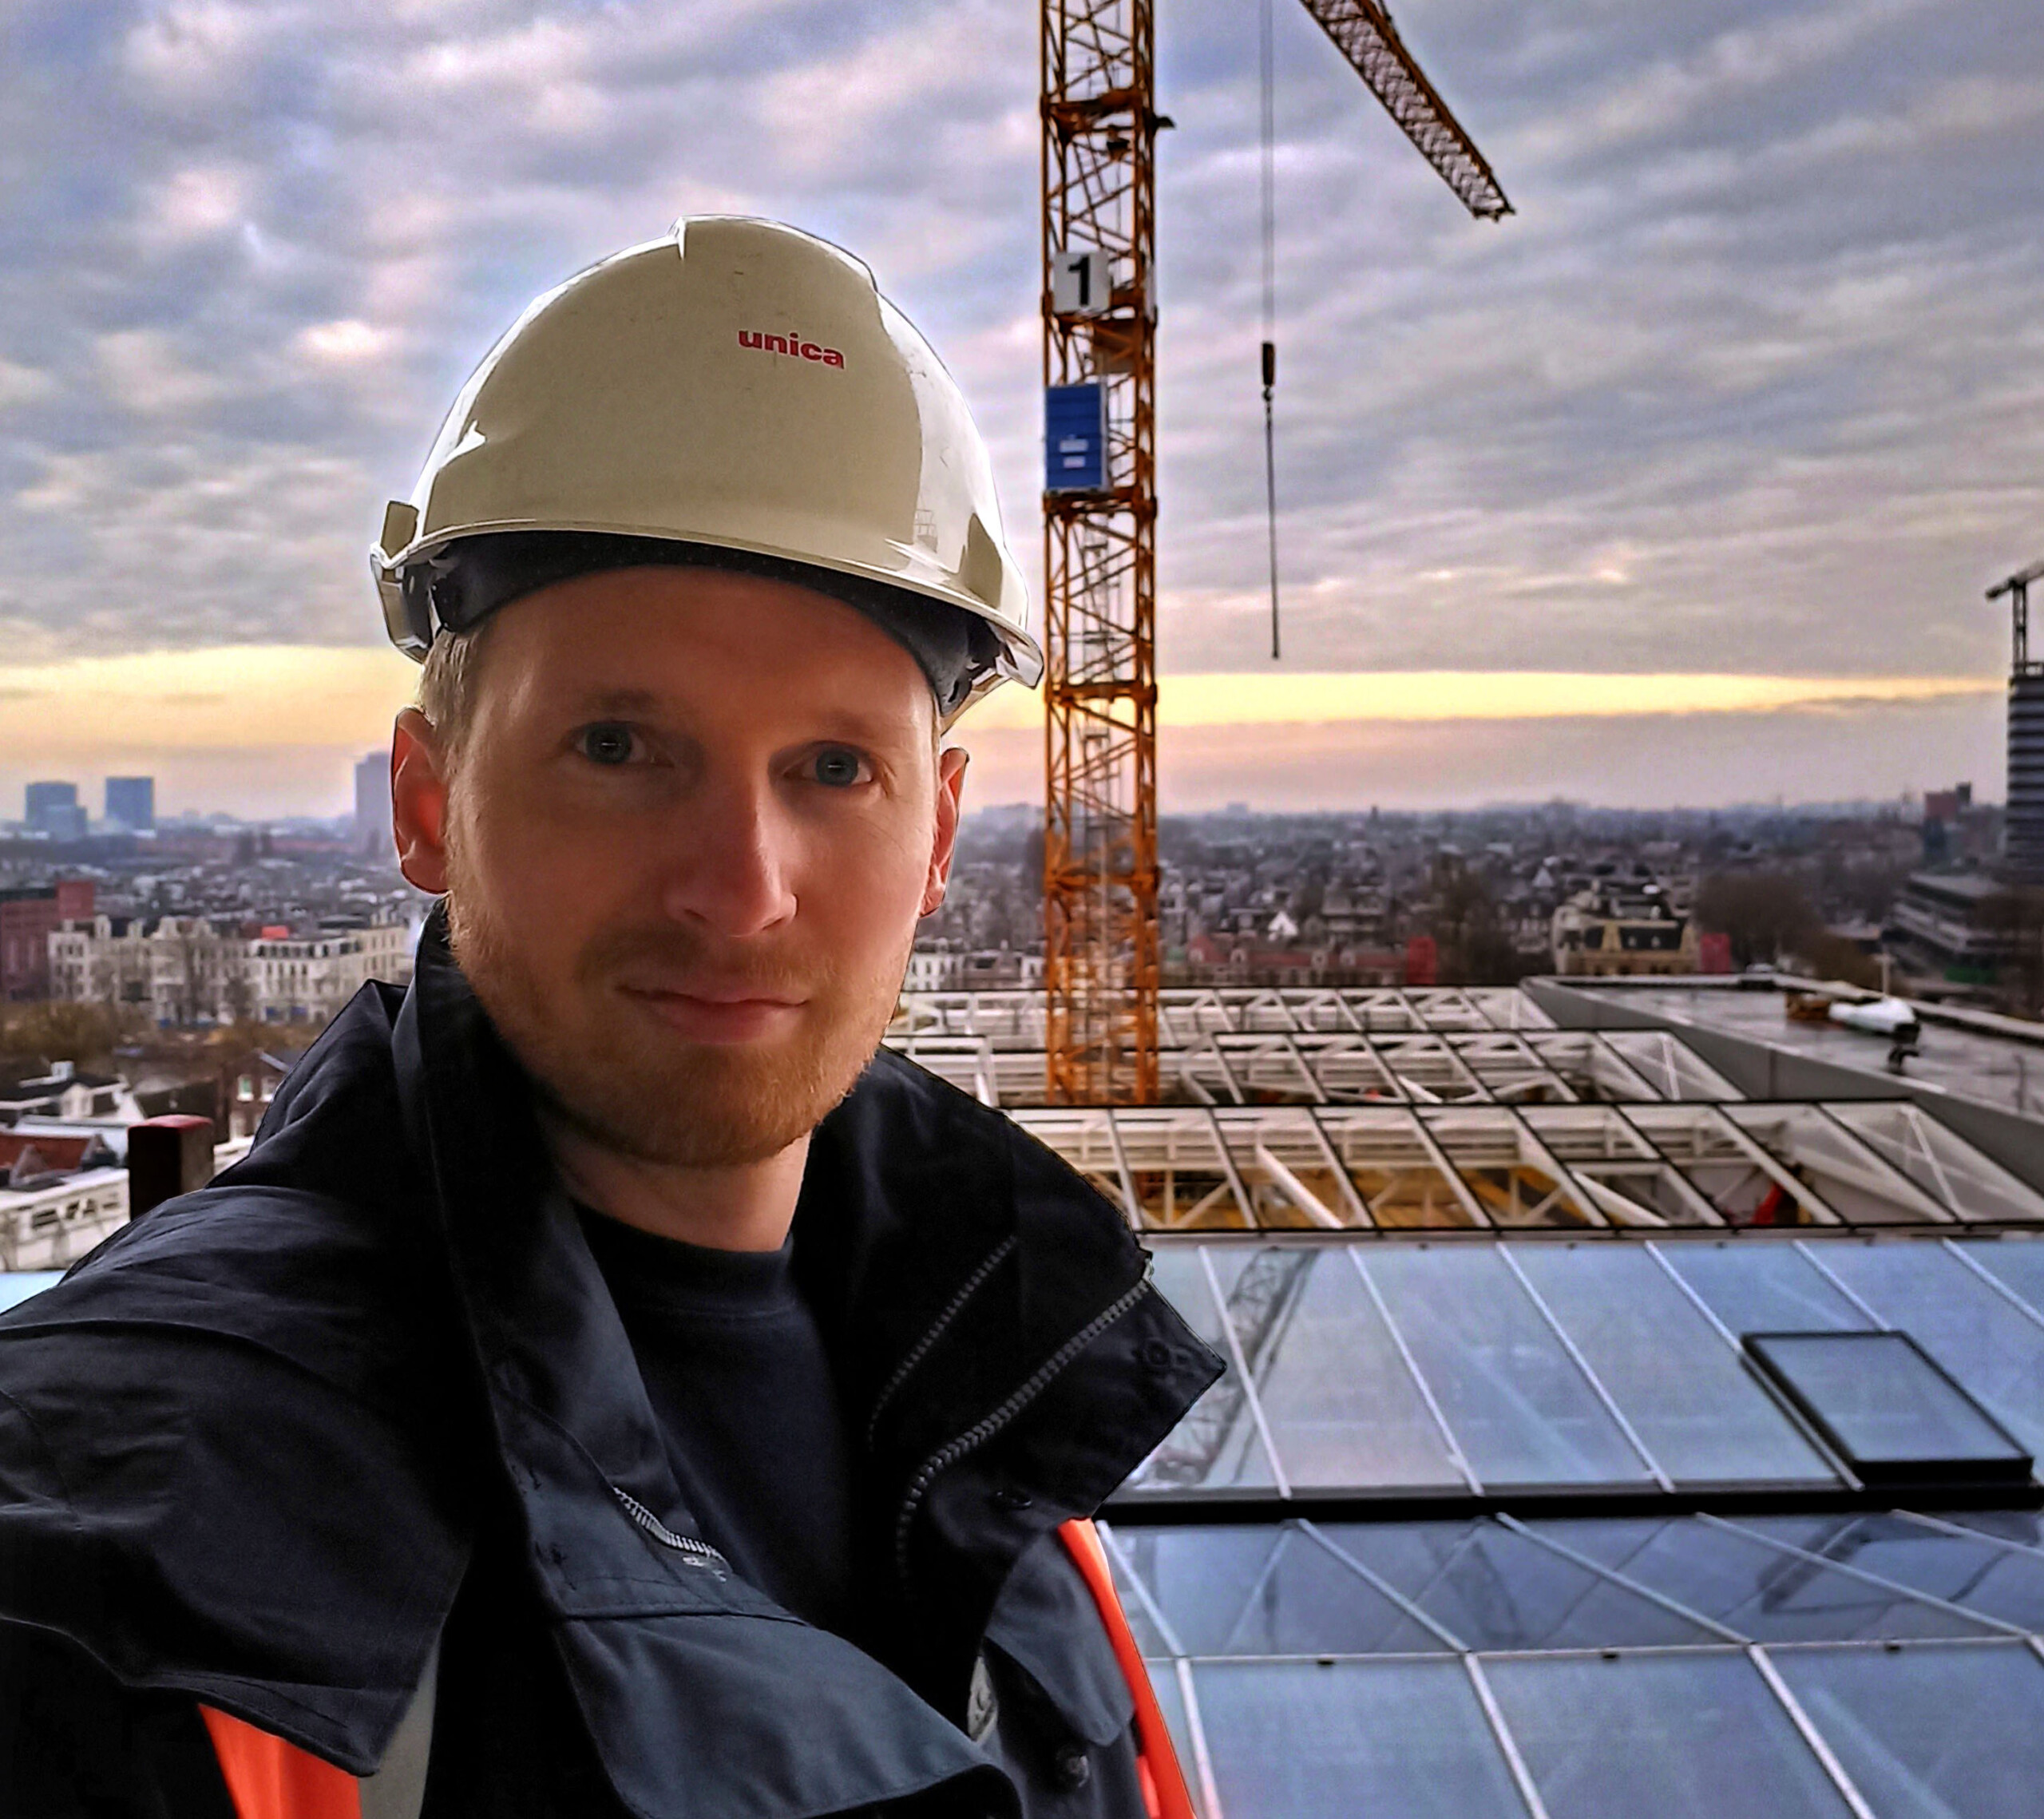 Rogier Koops kijkt in de camera. Hij staat op het dak van een gebouw met op de achtergrond een hijskraan en een ondergaande zon.